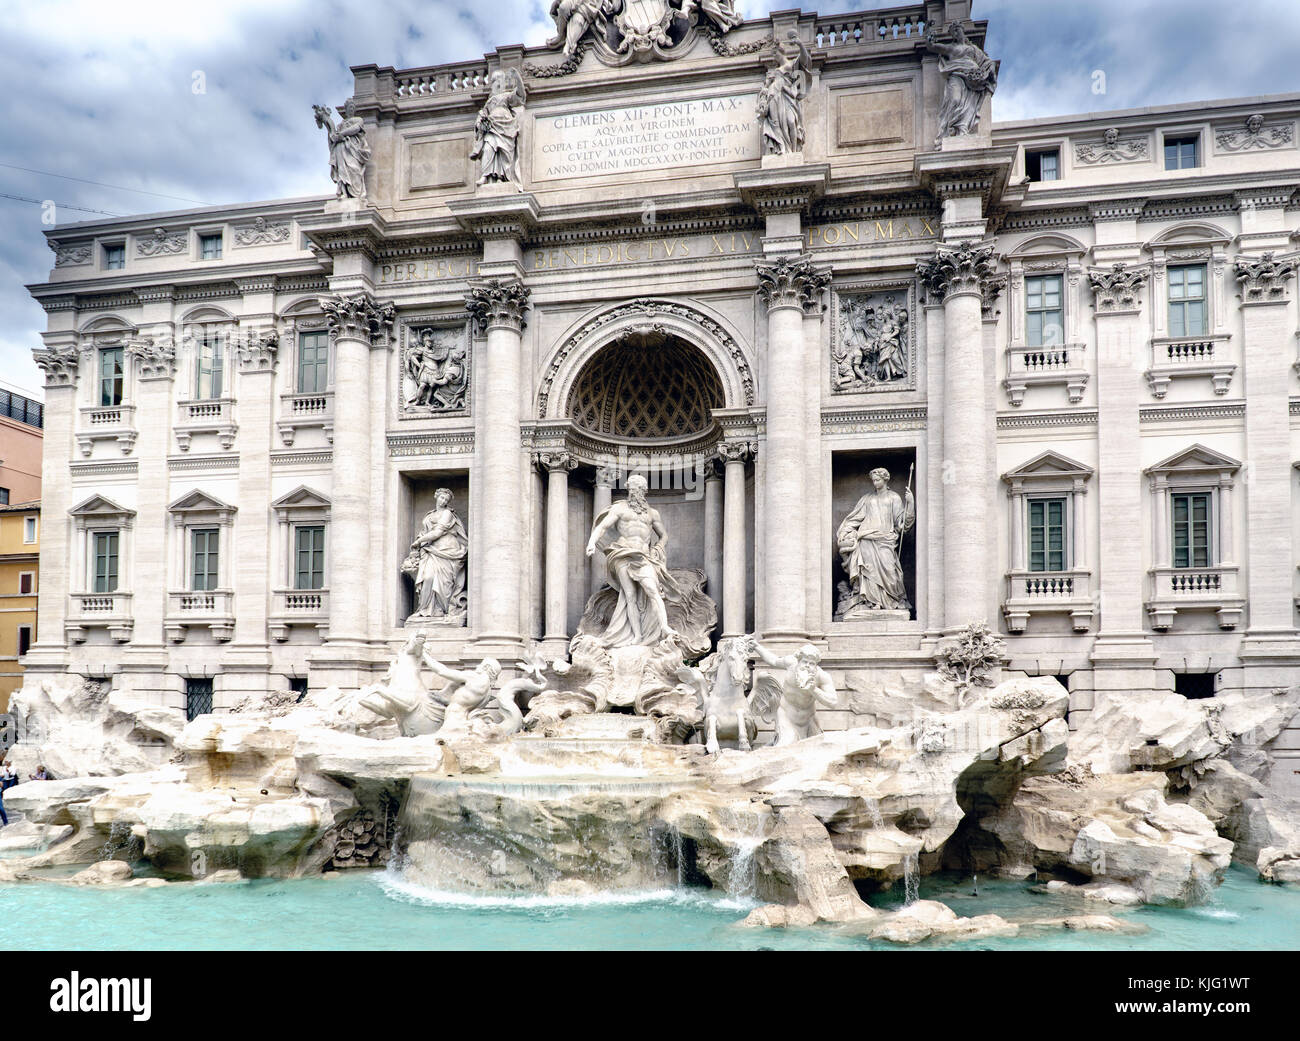 Vue panoramique sur la fontaine dite "Fontana di Trevi", un des endroits les plus visités de Rome et avec la place de trevi toujours plein de touristes. Banque D'Images